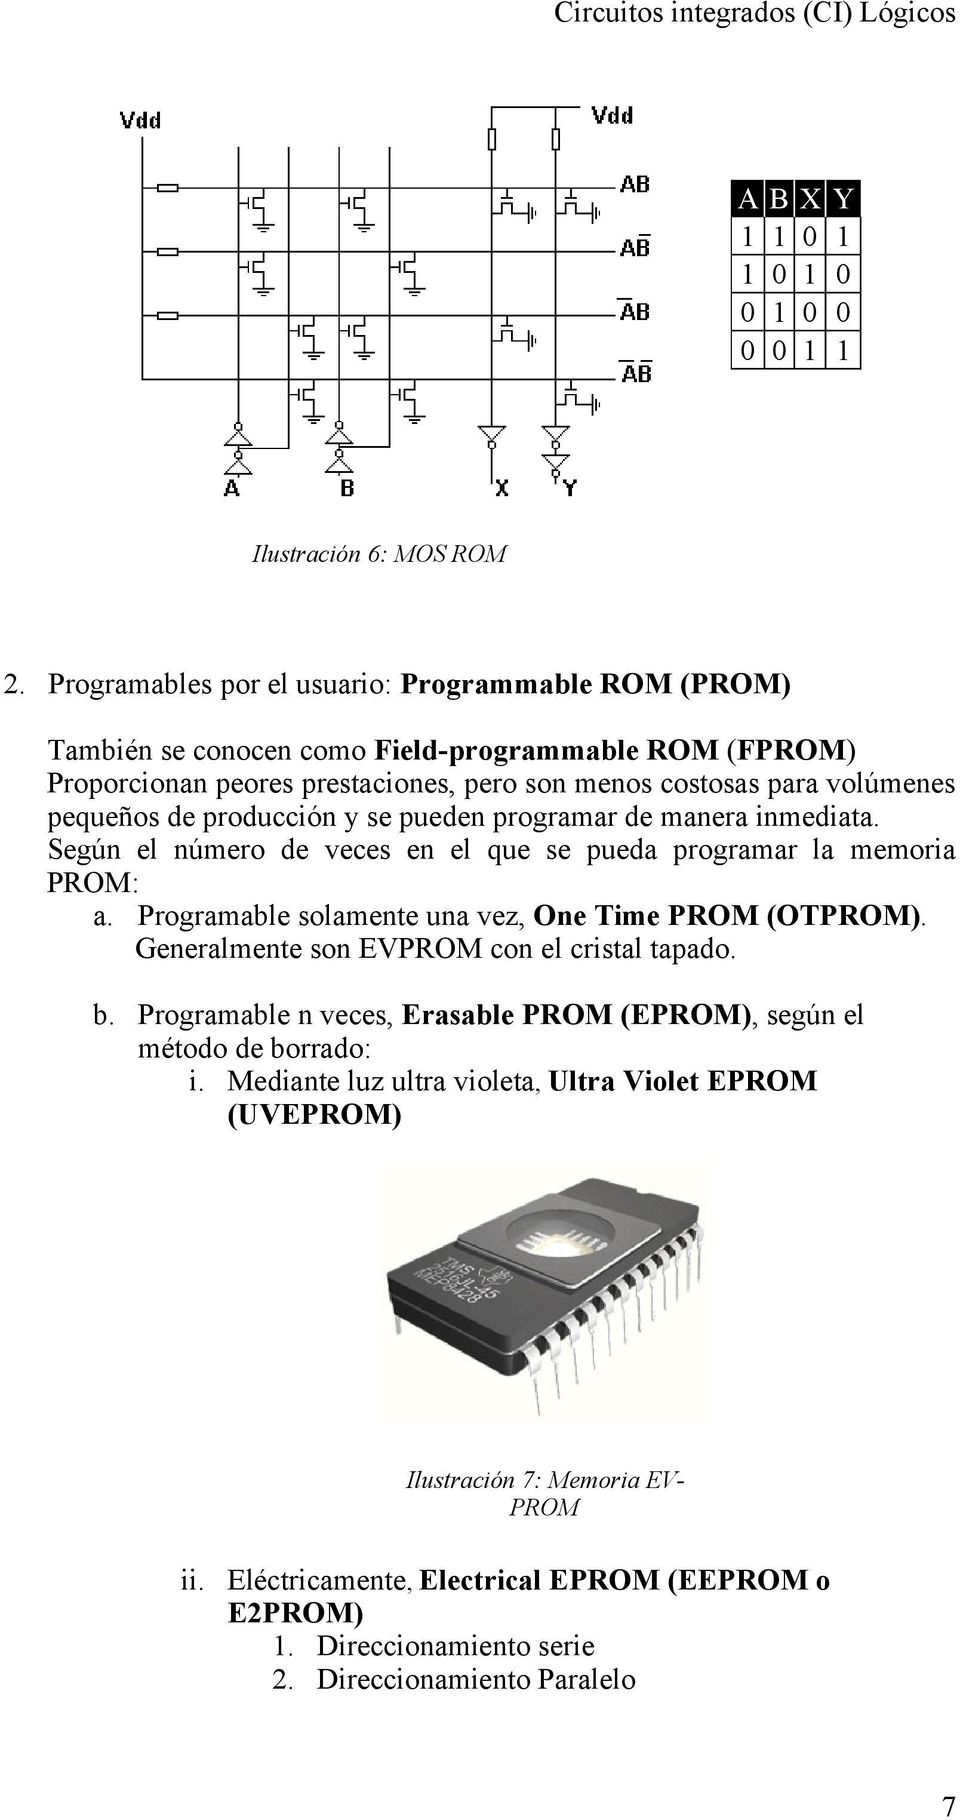 producción y se pueden programar de manera inmediata. Según el número de veces en el que se pueda programar la memoria PROM: a. Programable solamente una vez, One Time PROM (OTPROM).